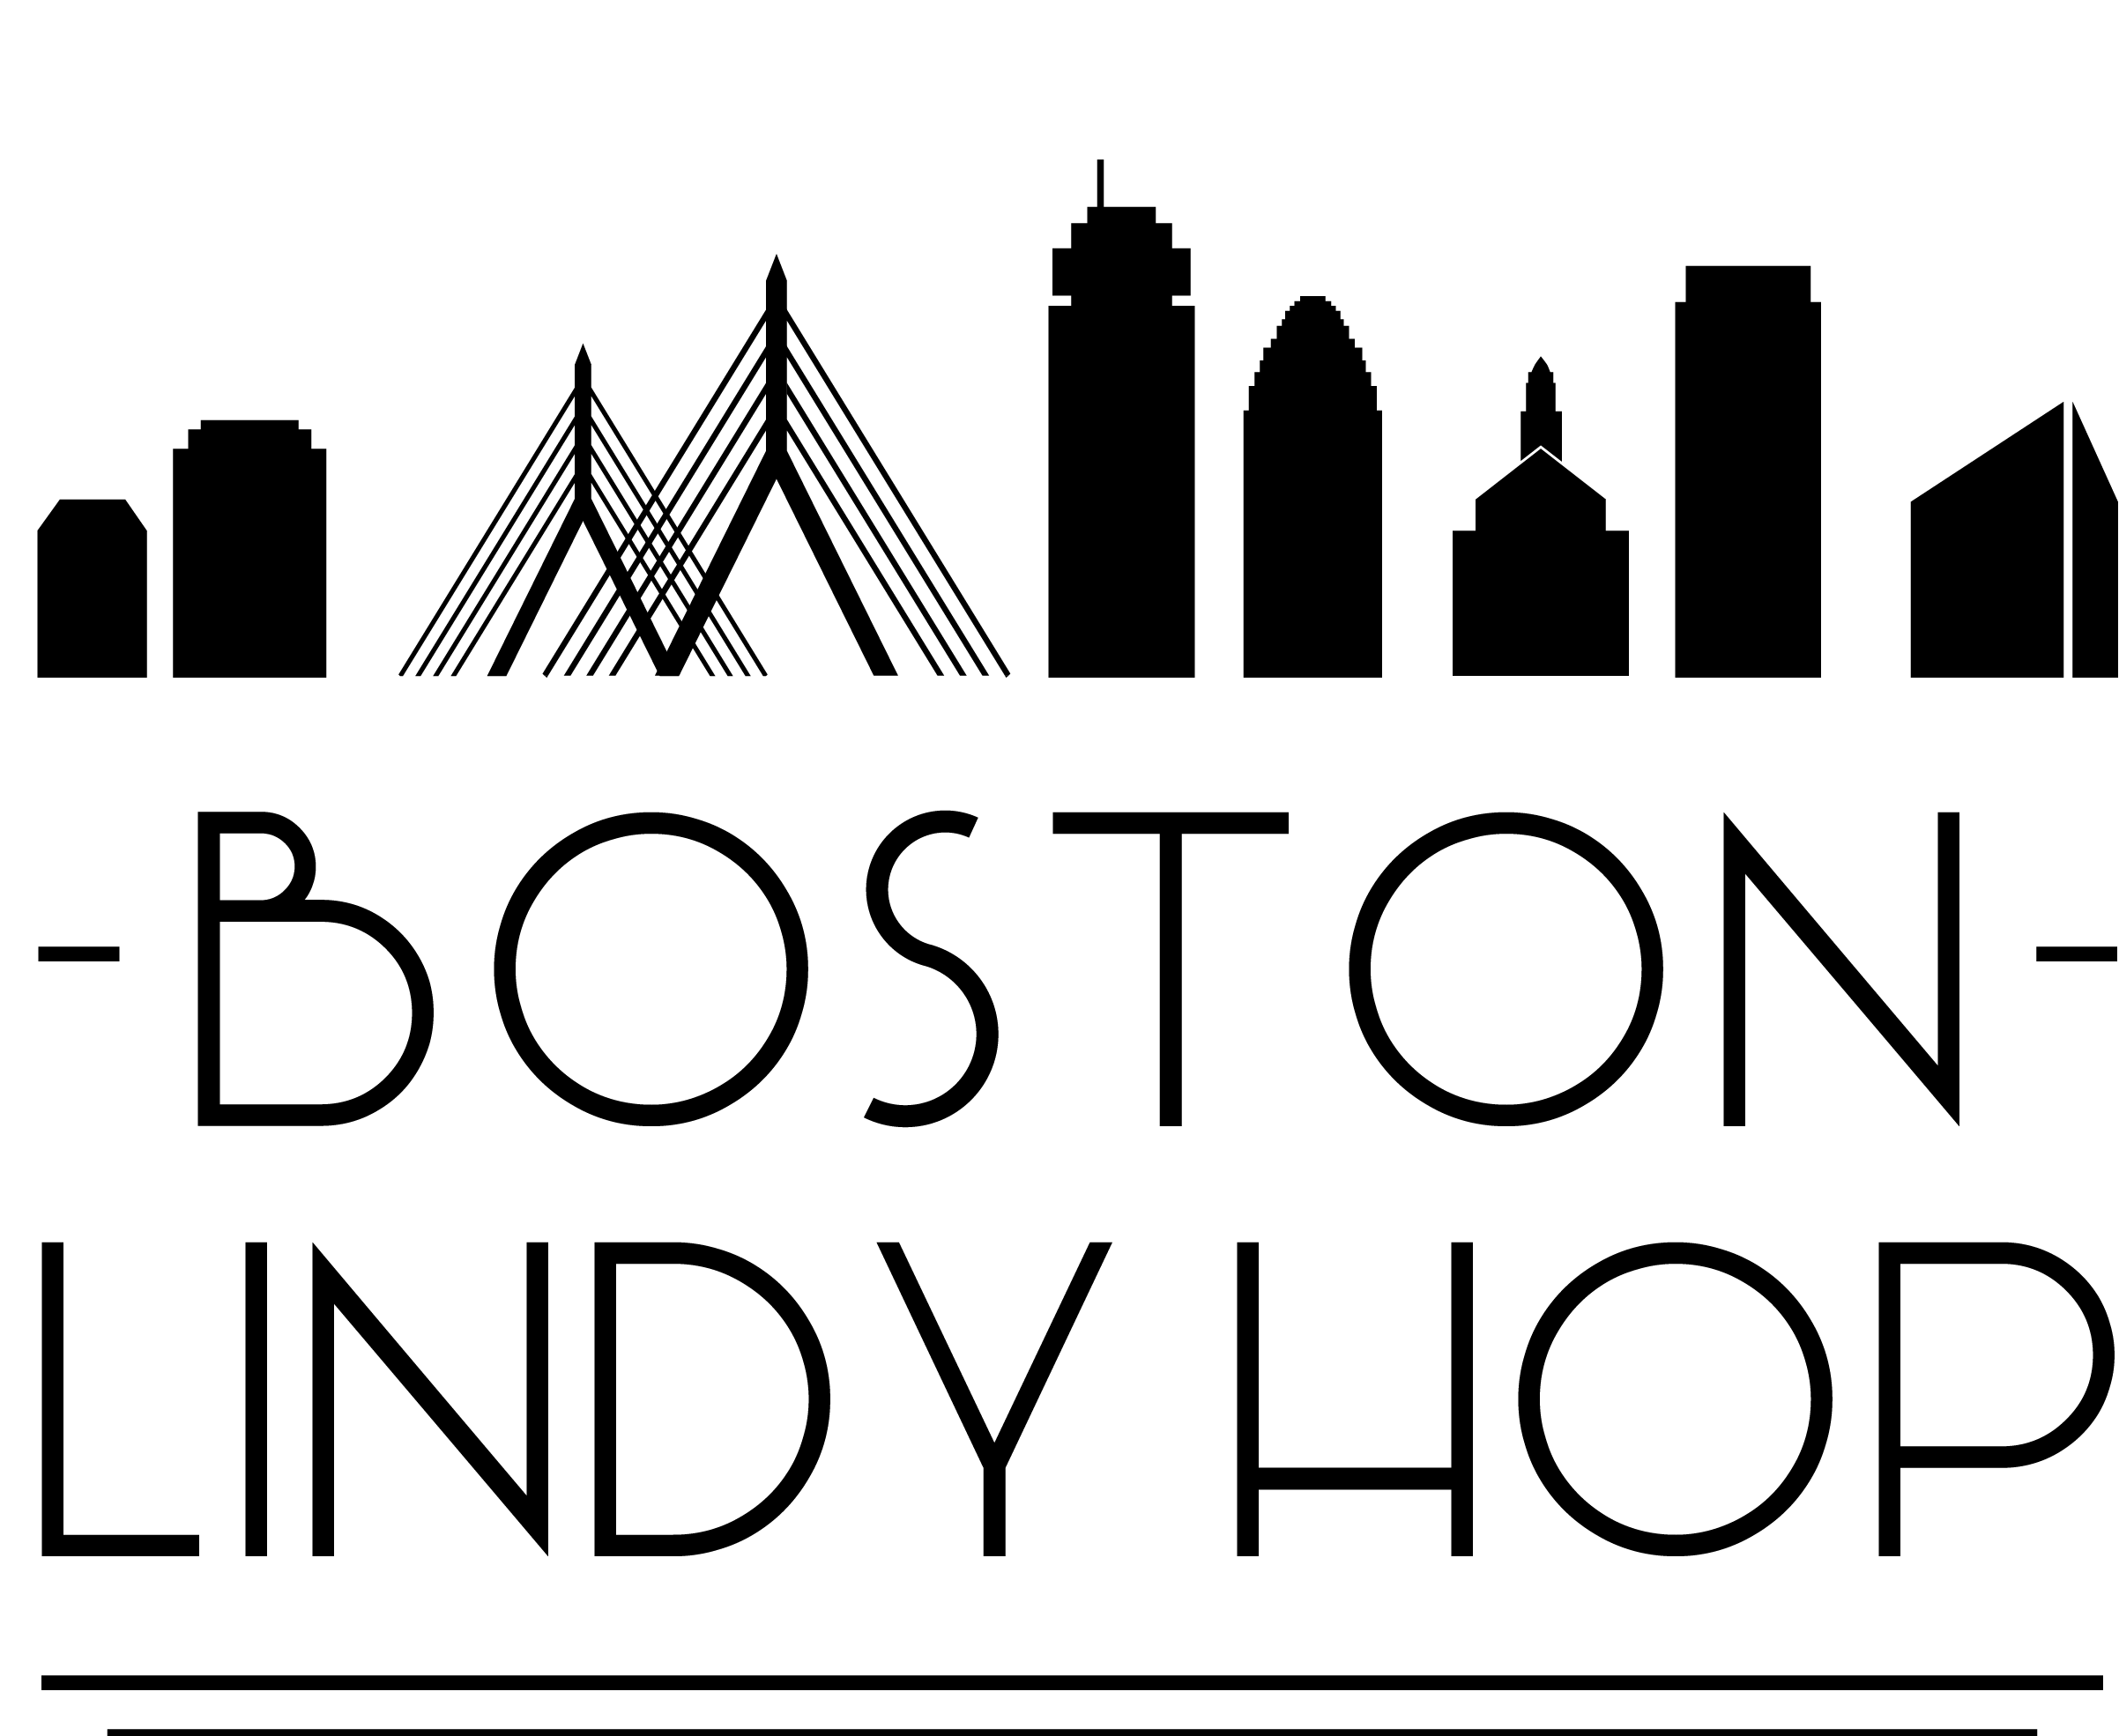 Boston Lindy Hop